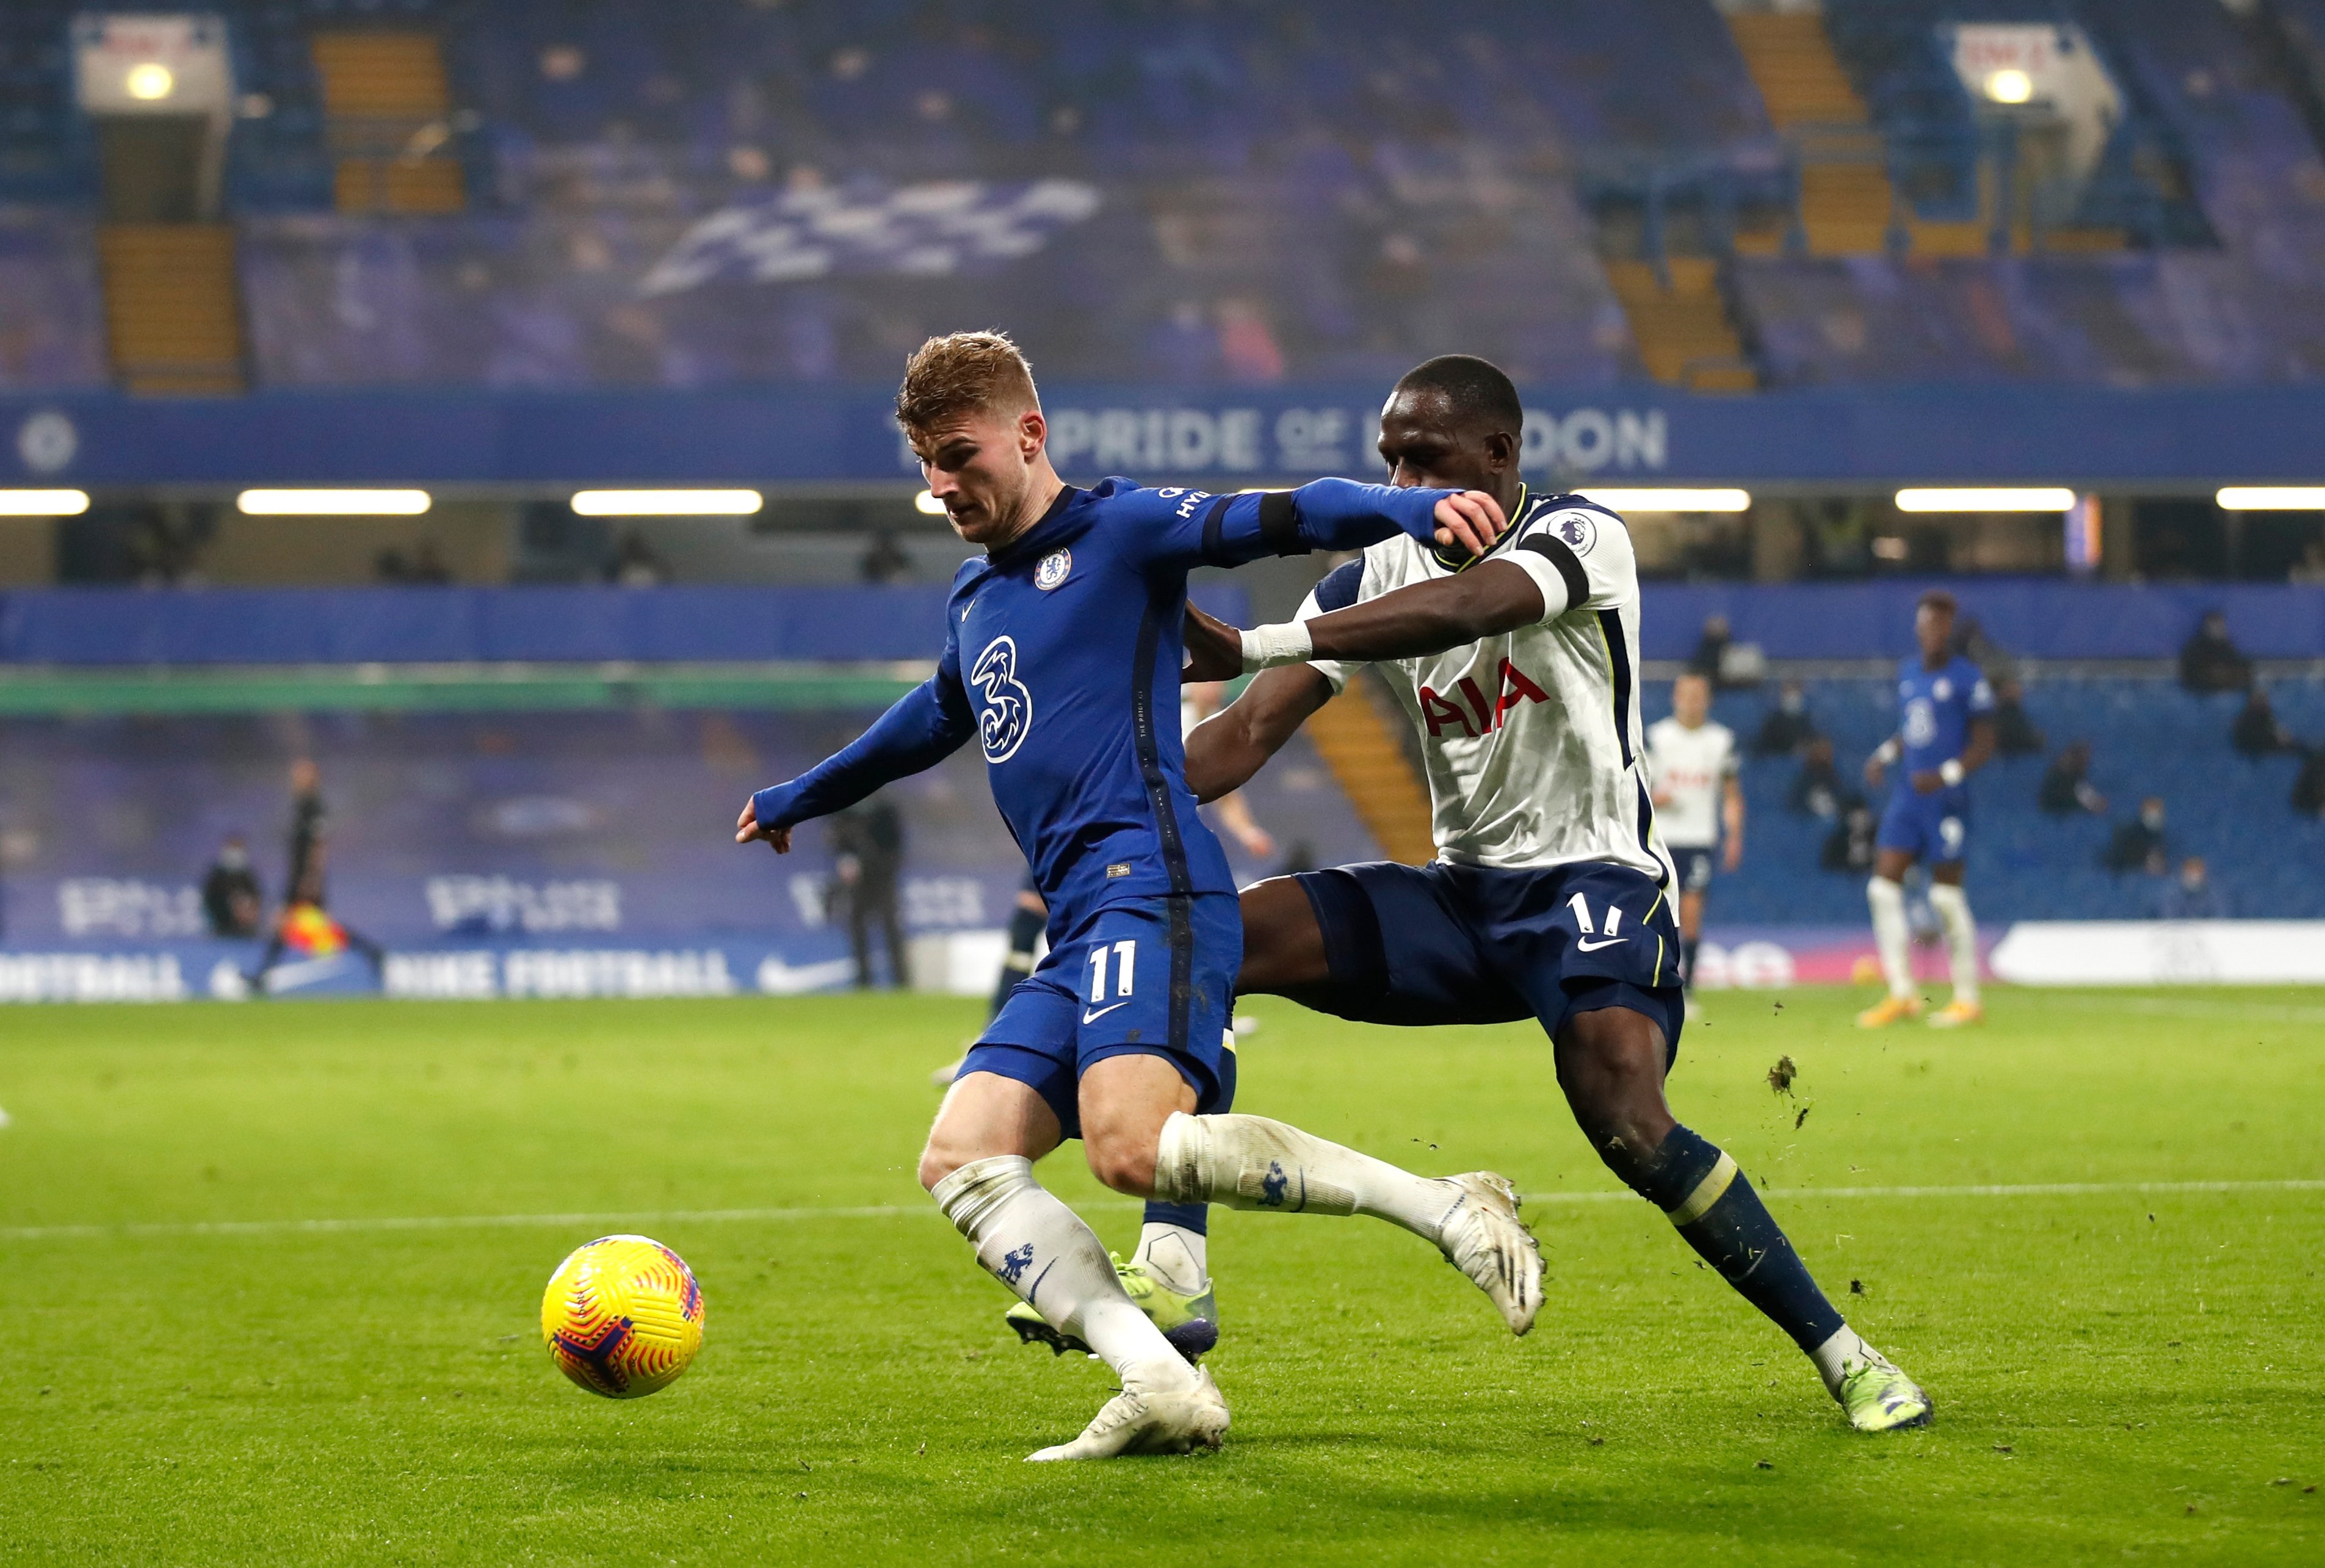 Penyerang Chelsea, Timo Werner ditempel ketat gelandang bertahan Tottenham, Moussa Sissoko. (Foto: Twitter/@ChelseaFC)